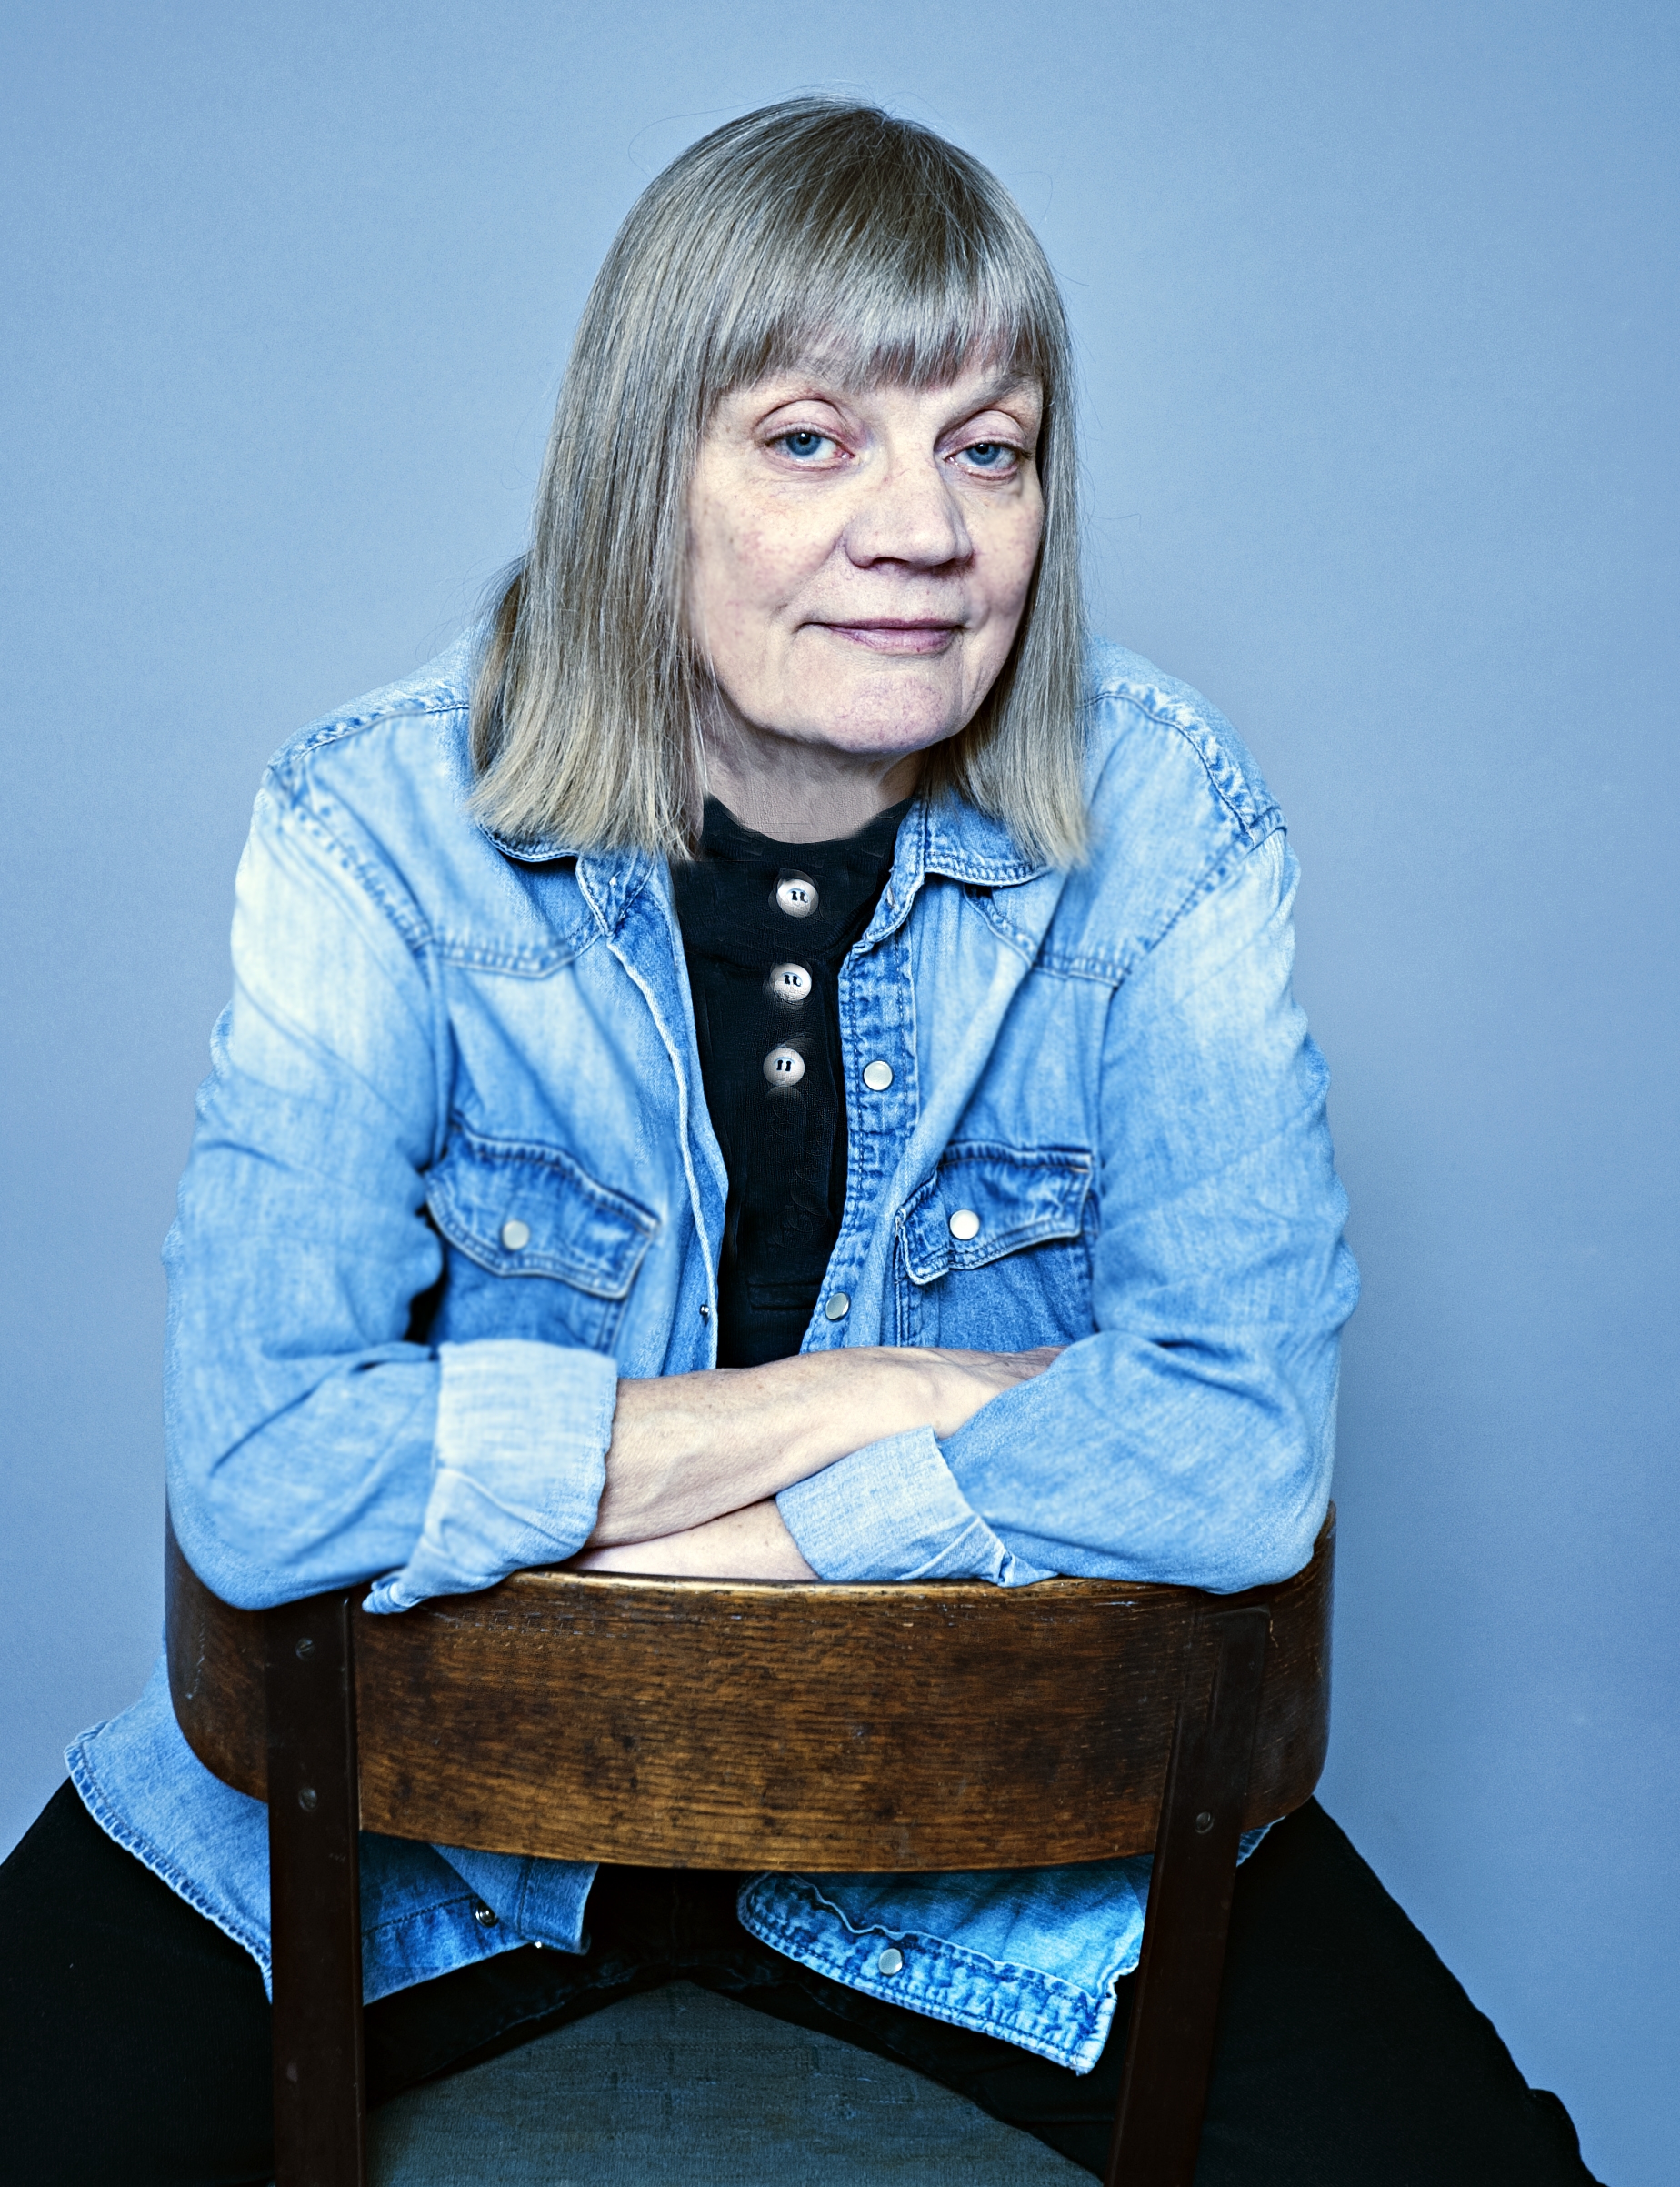 Gun-Britt Sundström wearing a denim jacket with a short blond bob, sitting backwards on a chair